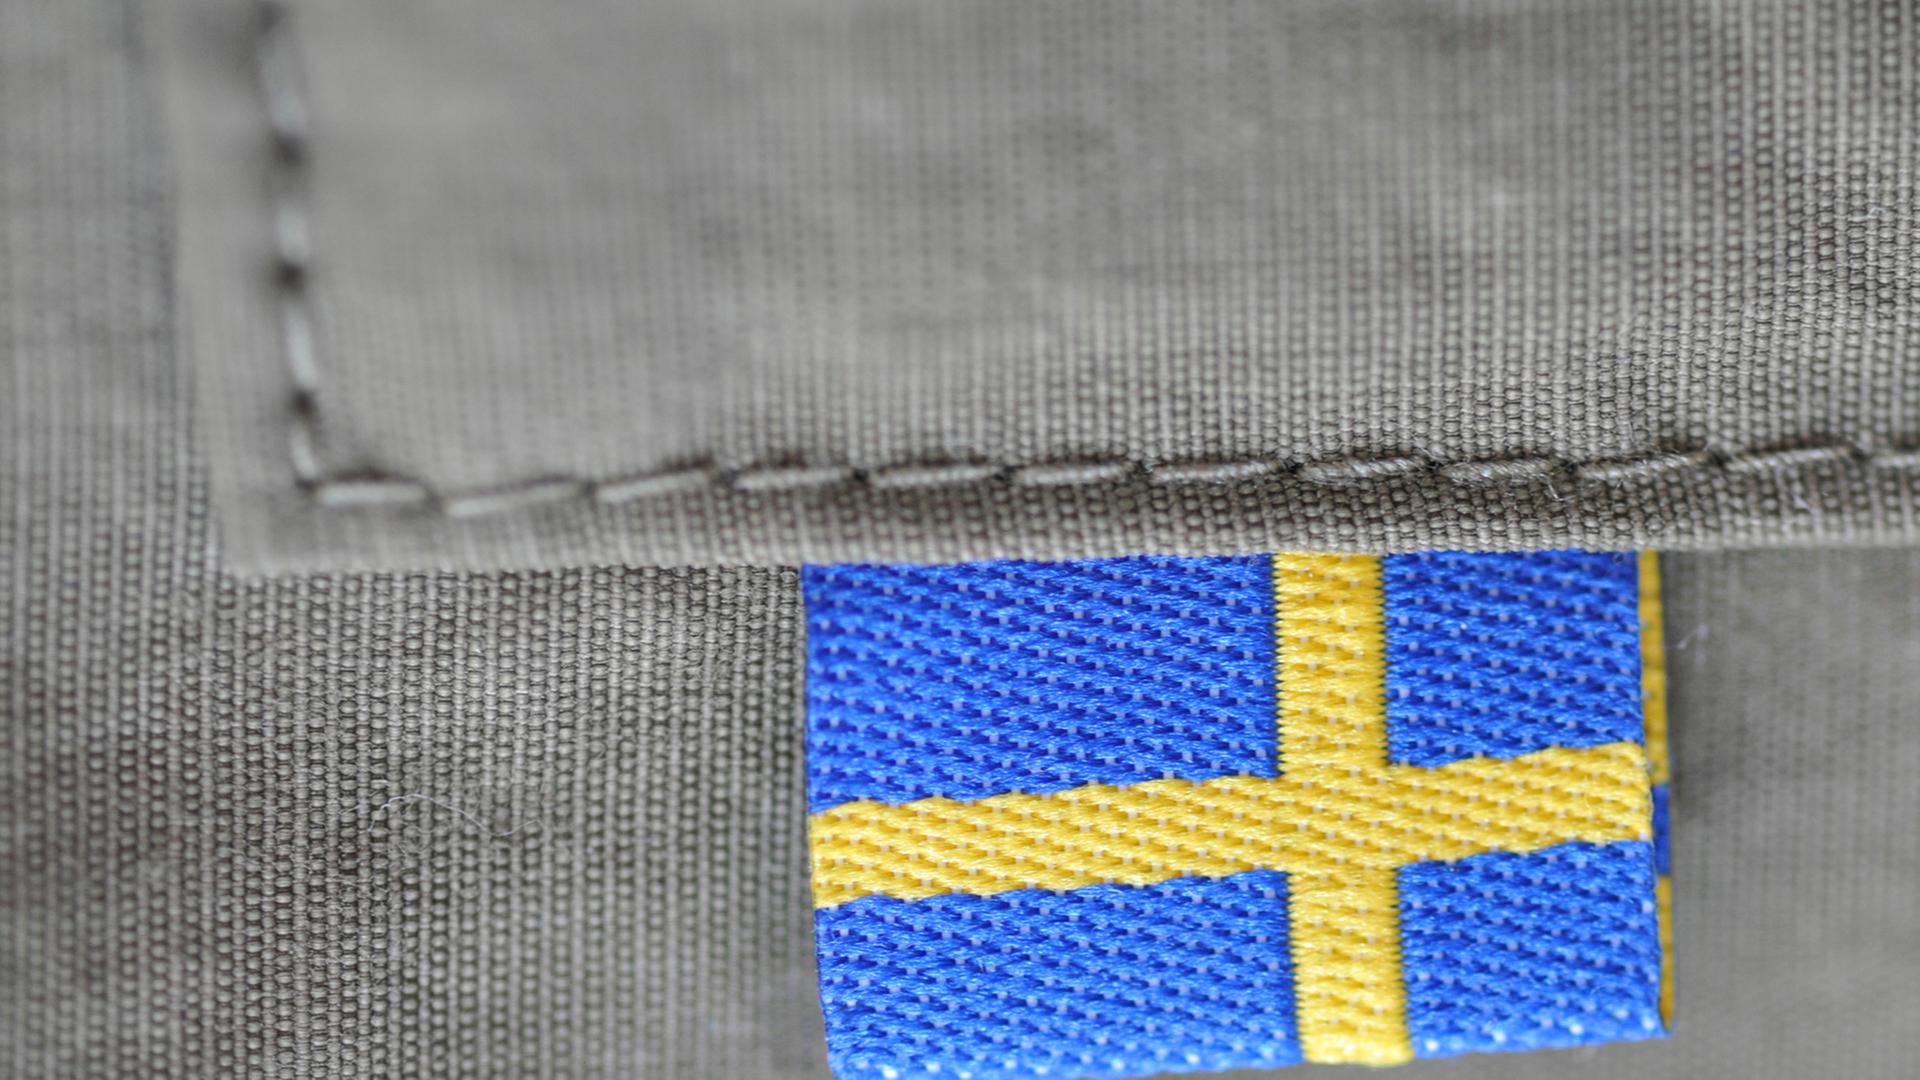 Eine schwedische Flagge an einer Tasche